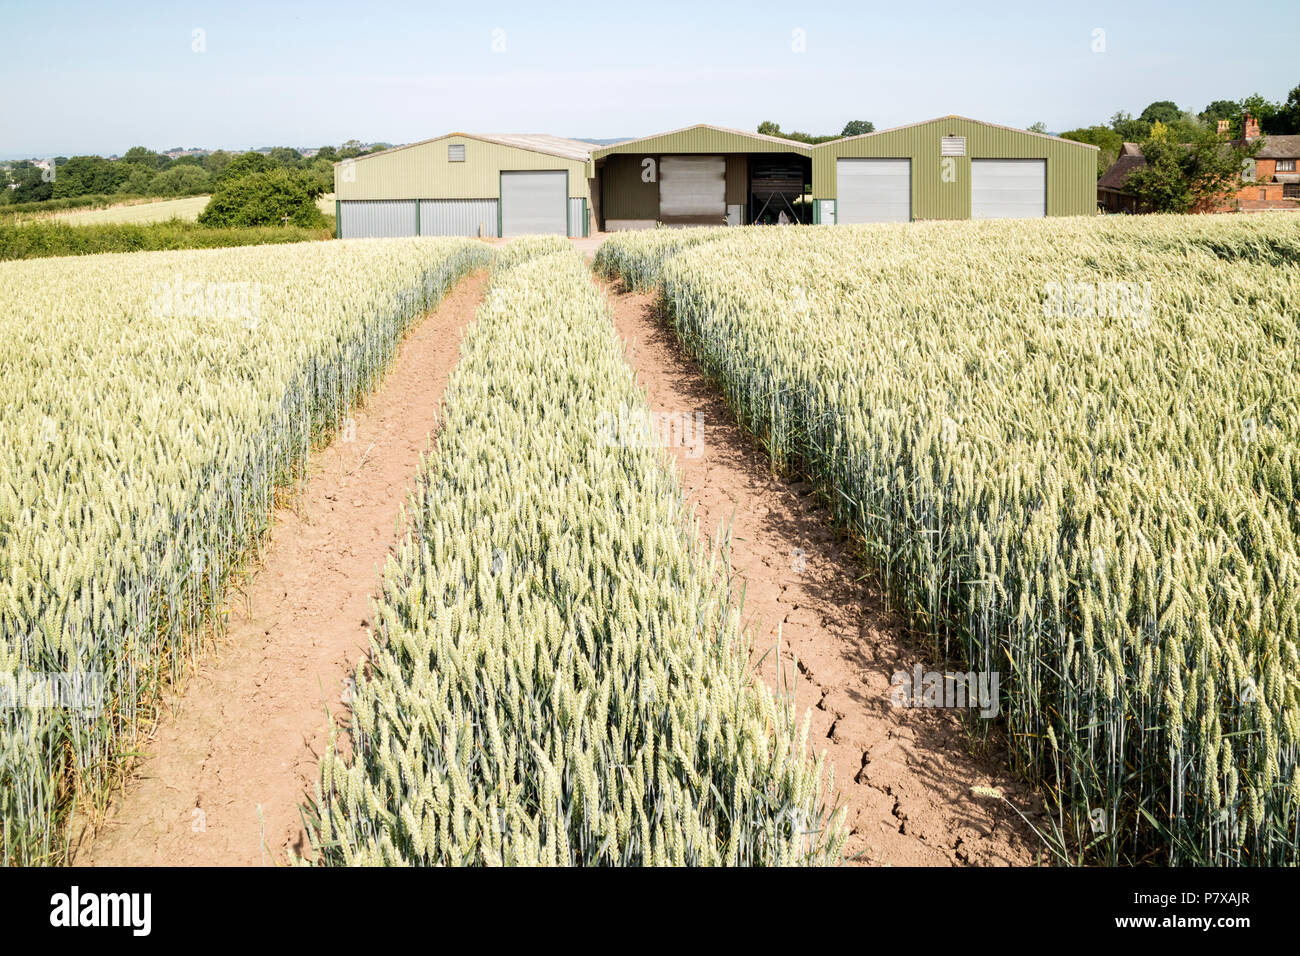 La culture du blé sur une ferme dans l'anglais Juillet 2018 Vague de chaleur et la sécheresse, England, UK Banque D'Images